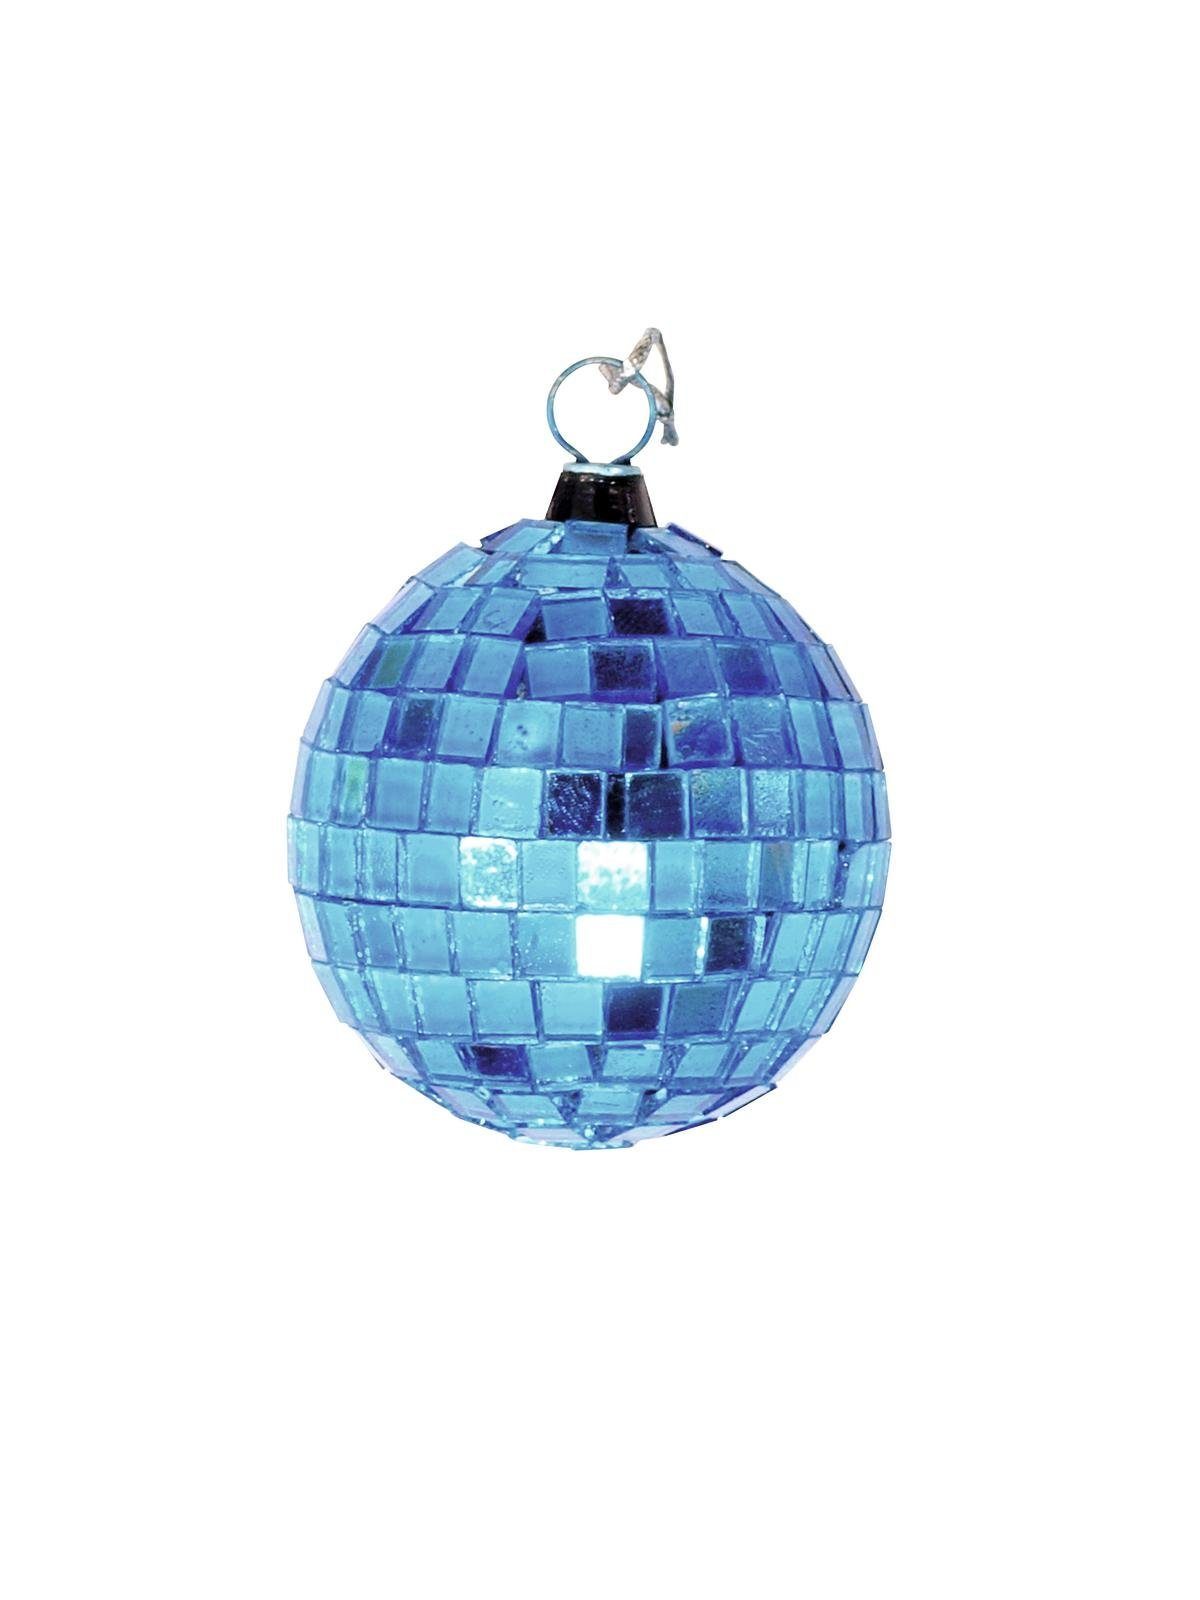 SATISFIRE Discolicht 5cm Disko Party Discokugel Spiegelkugel coole Mini Deko blau